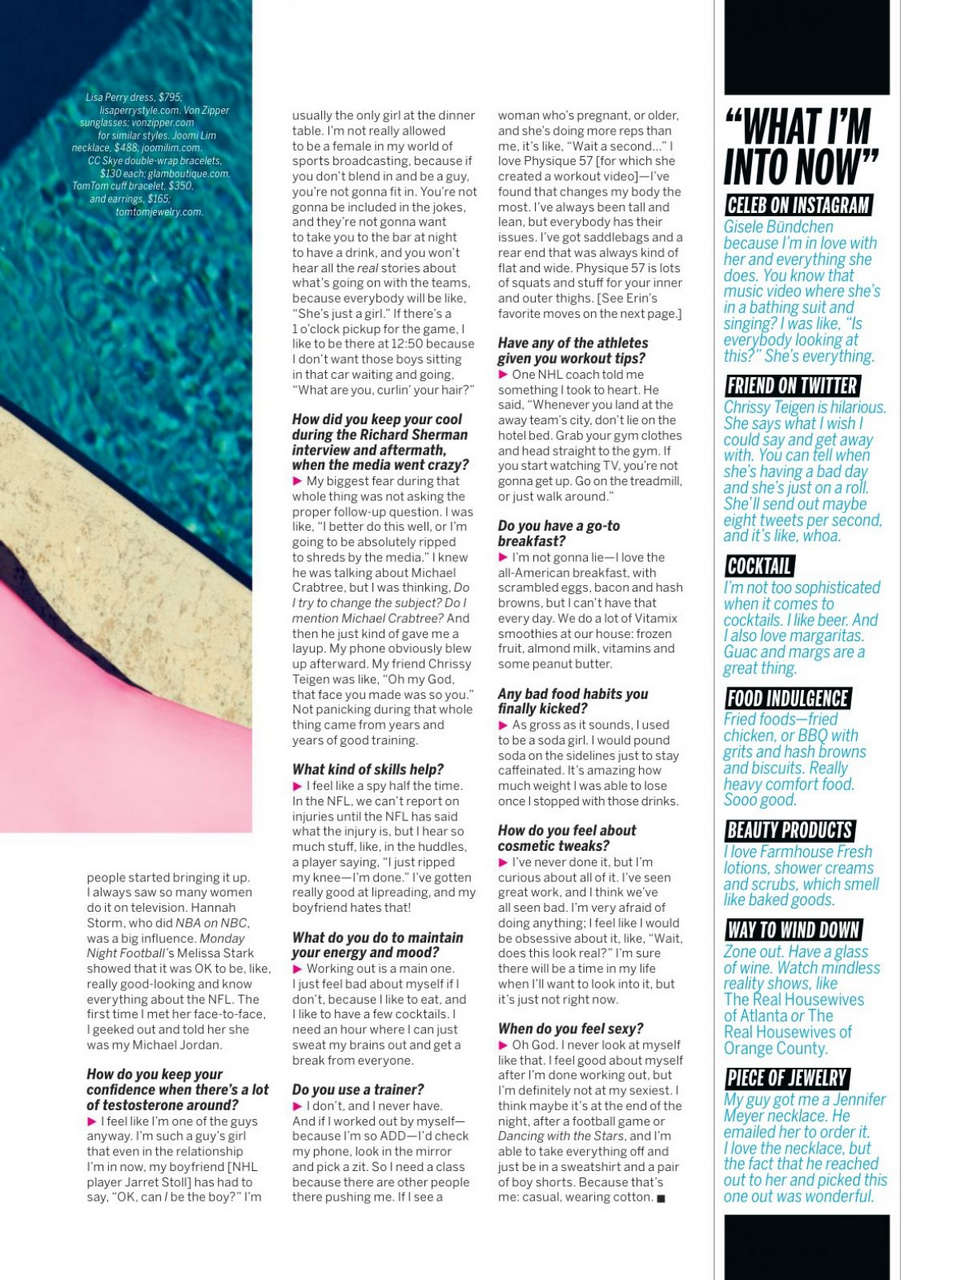 Erin Andrews Health Magazine September 2014 Issue